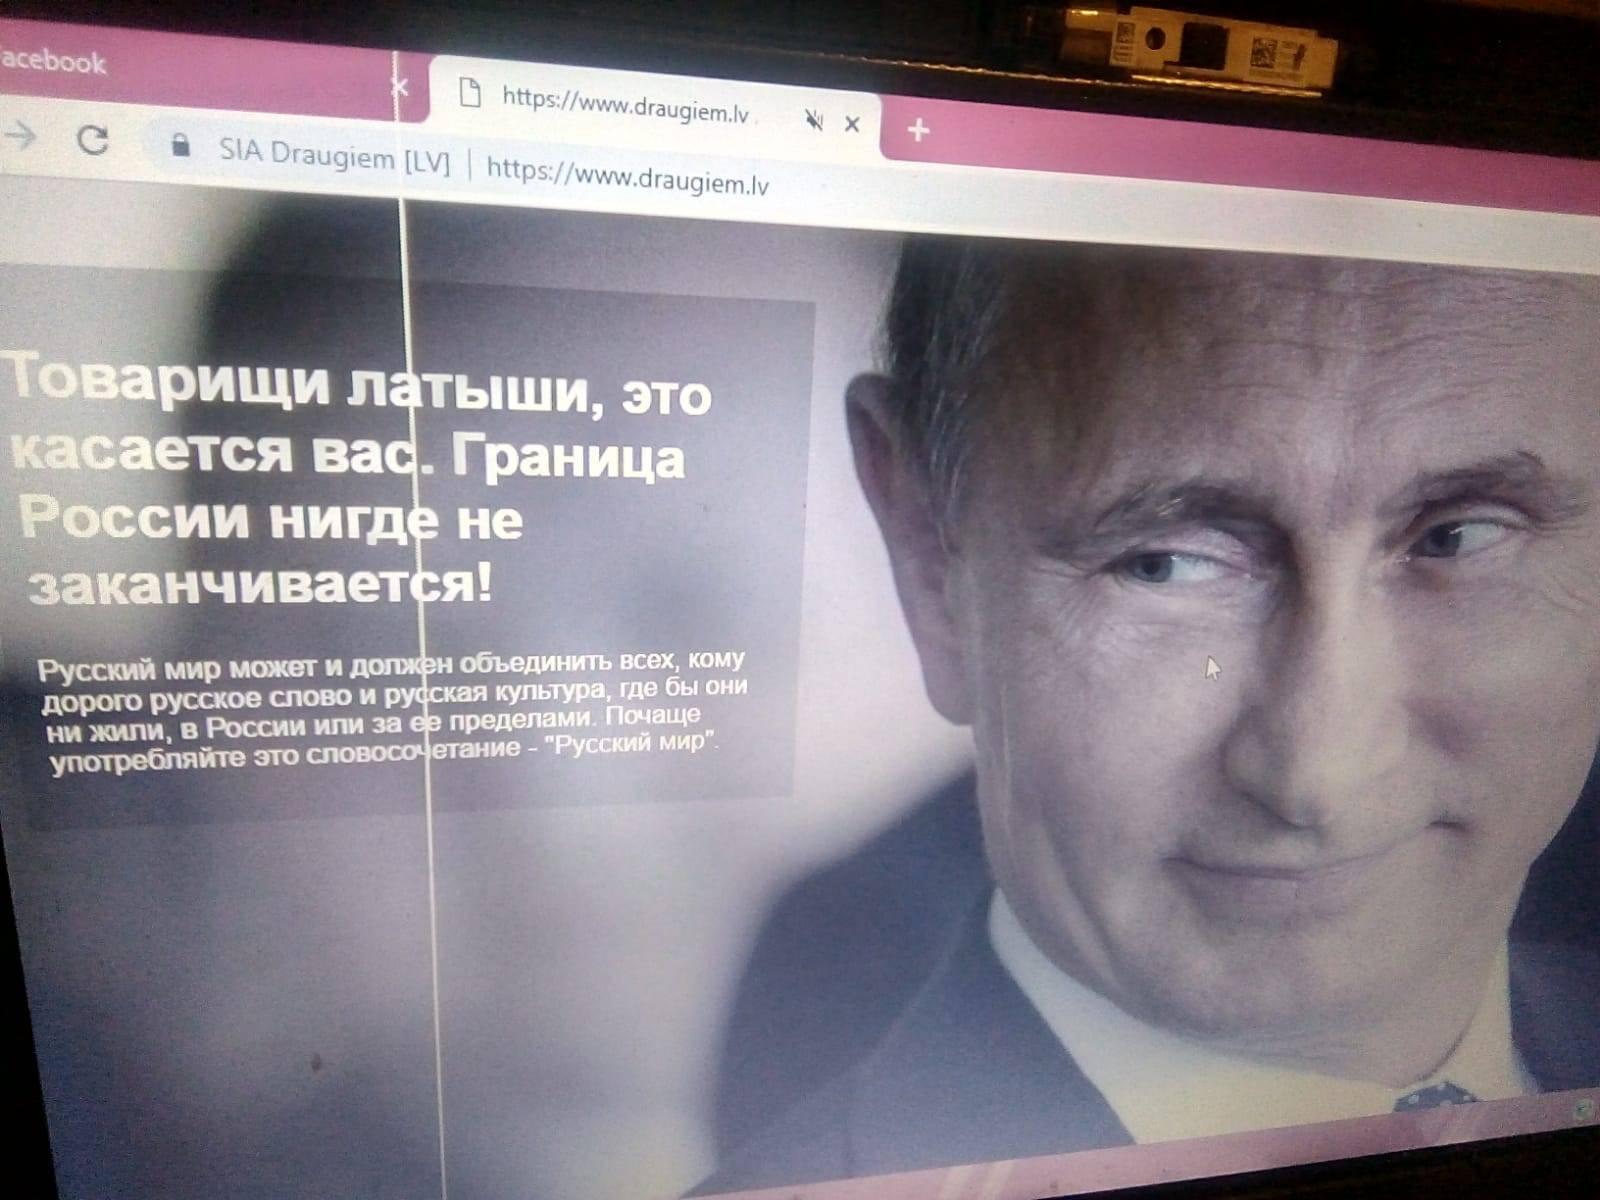 Выборы в Латвии: хакеры взломали соцсеть и разместили фото Путина